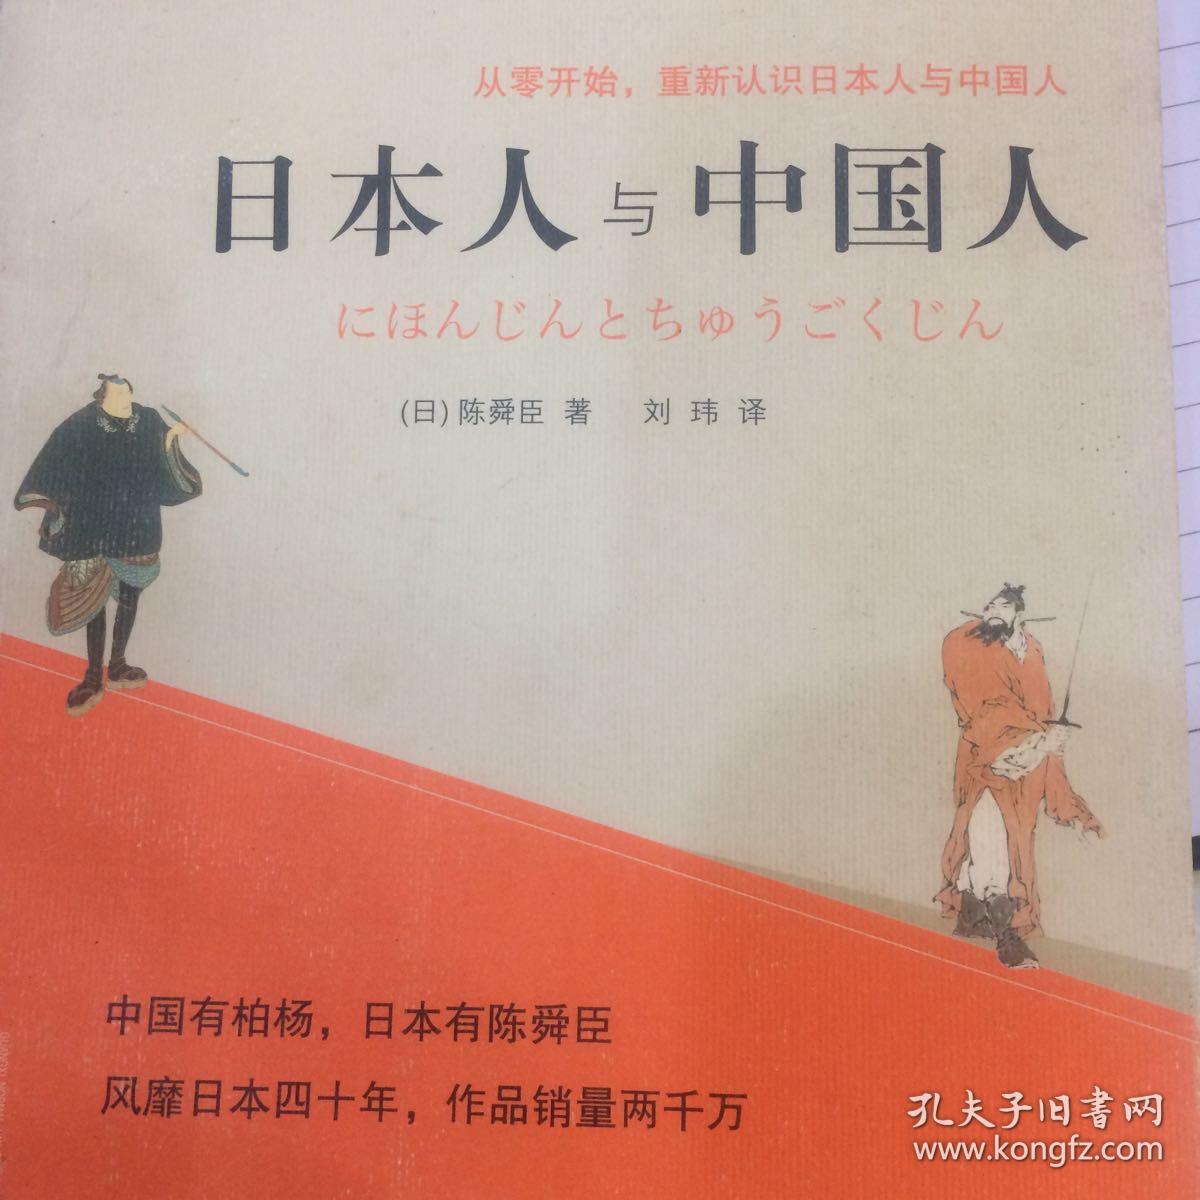 理想国·陈舜臣作品:日本人与中国人(新版)